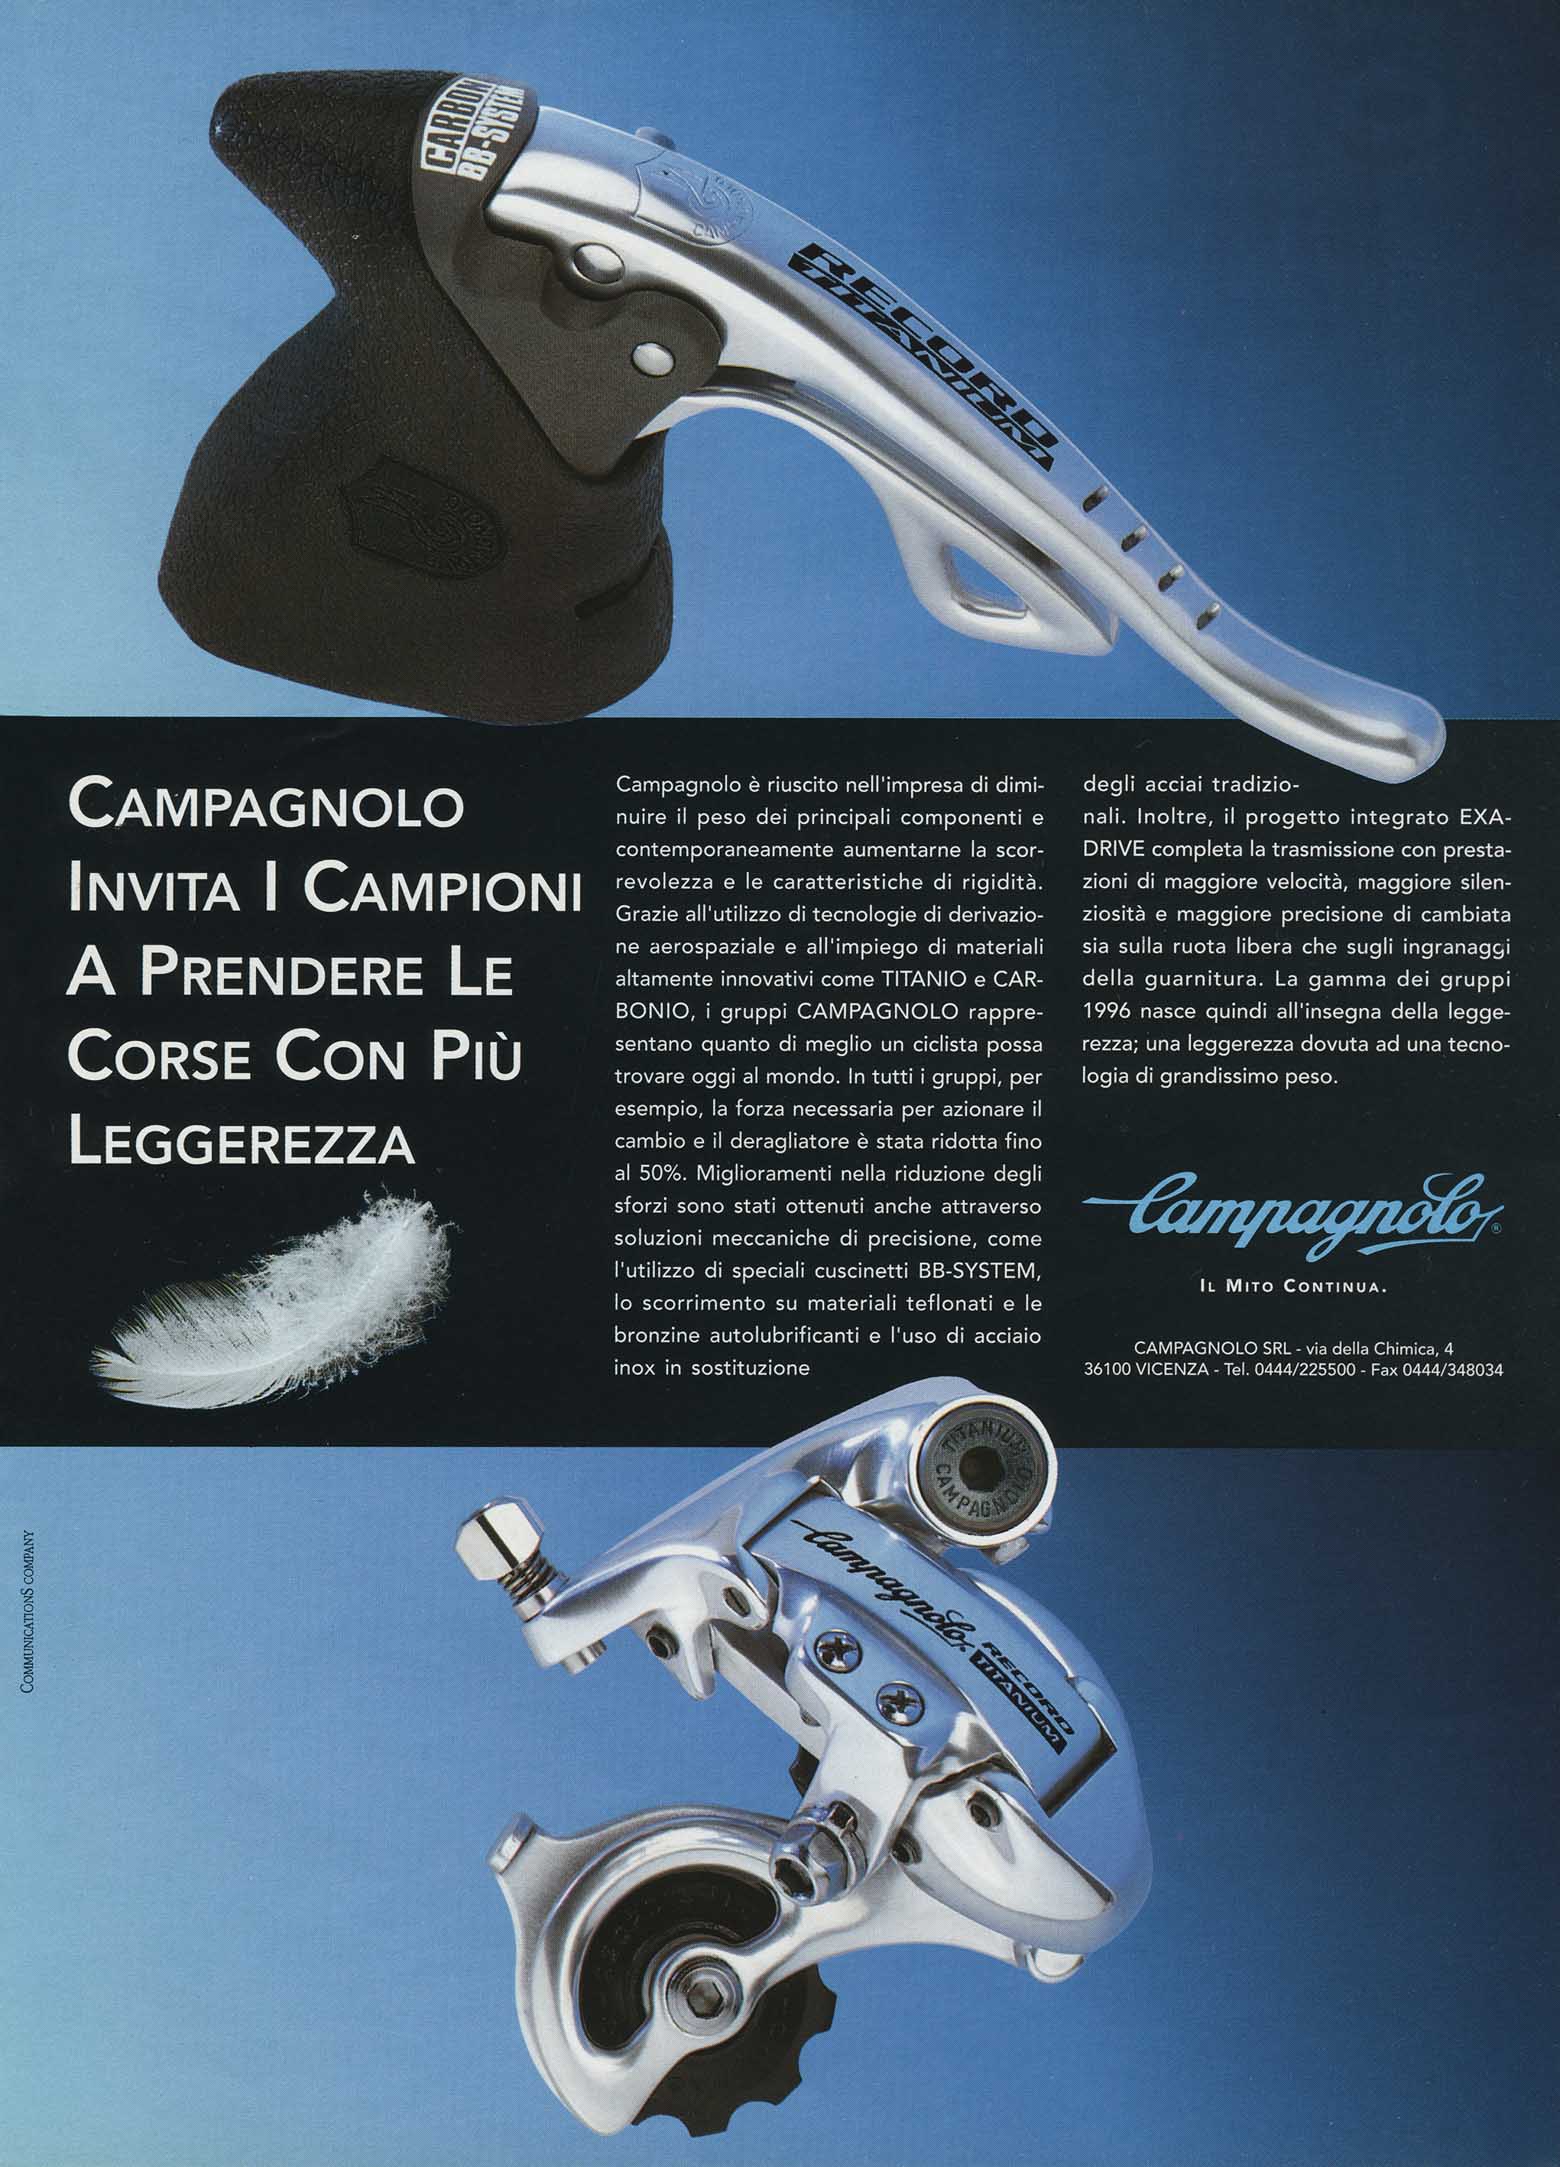 La Bicicletta Guida 96 - Campagnolo advert main image